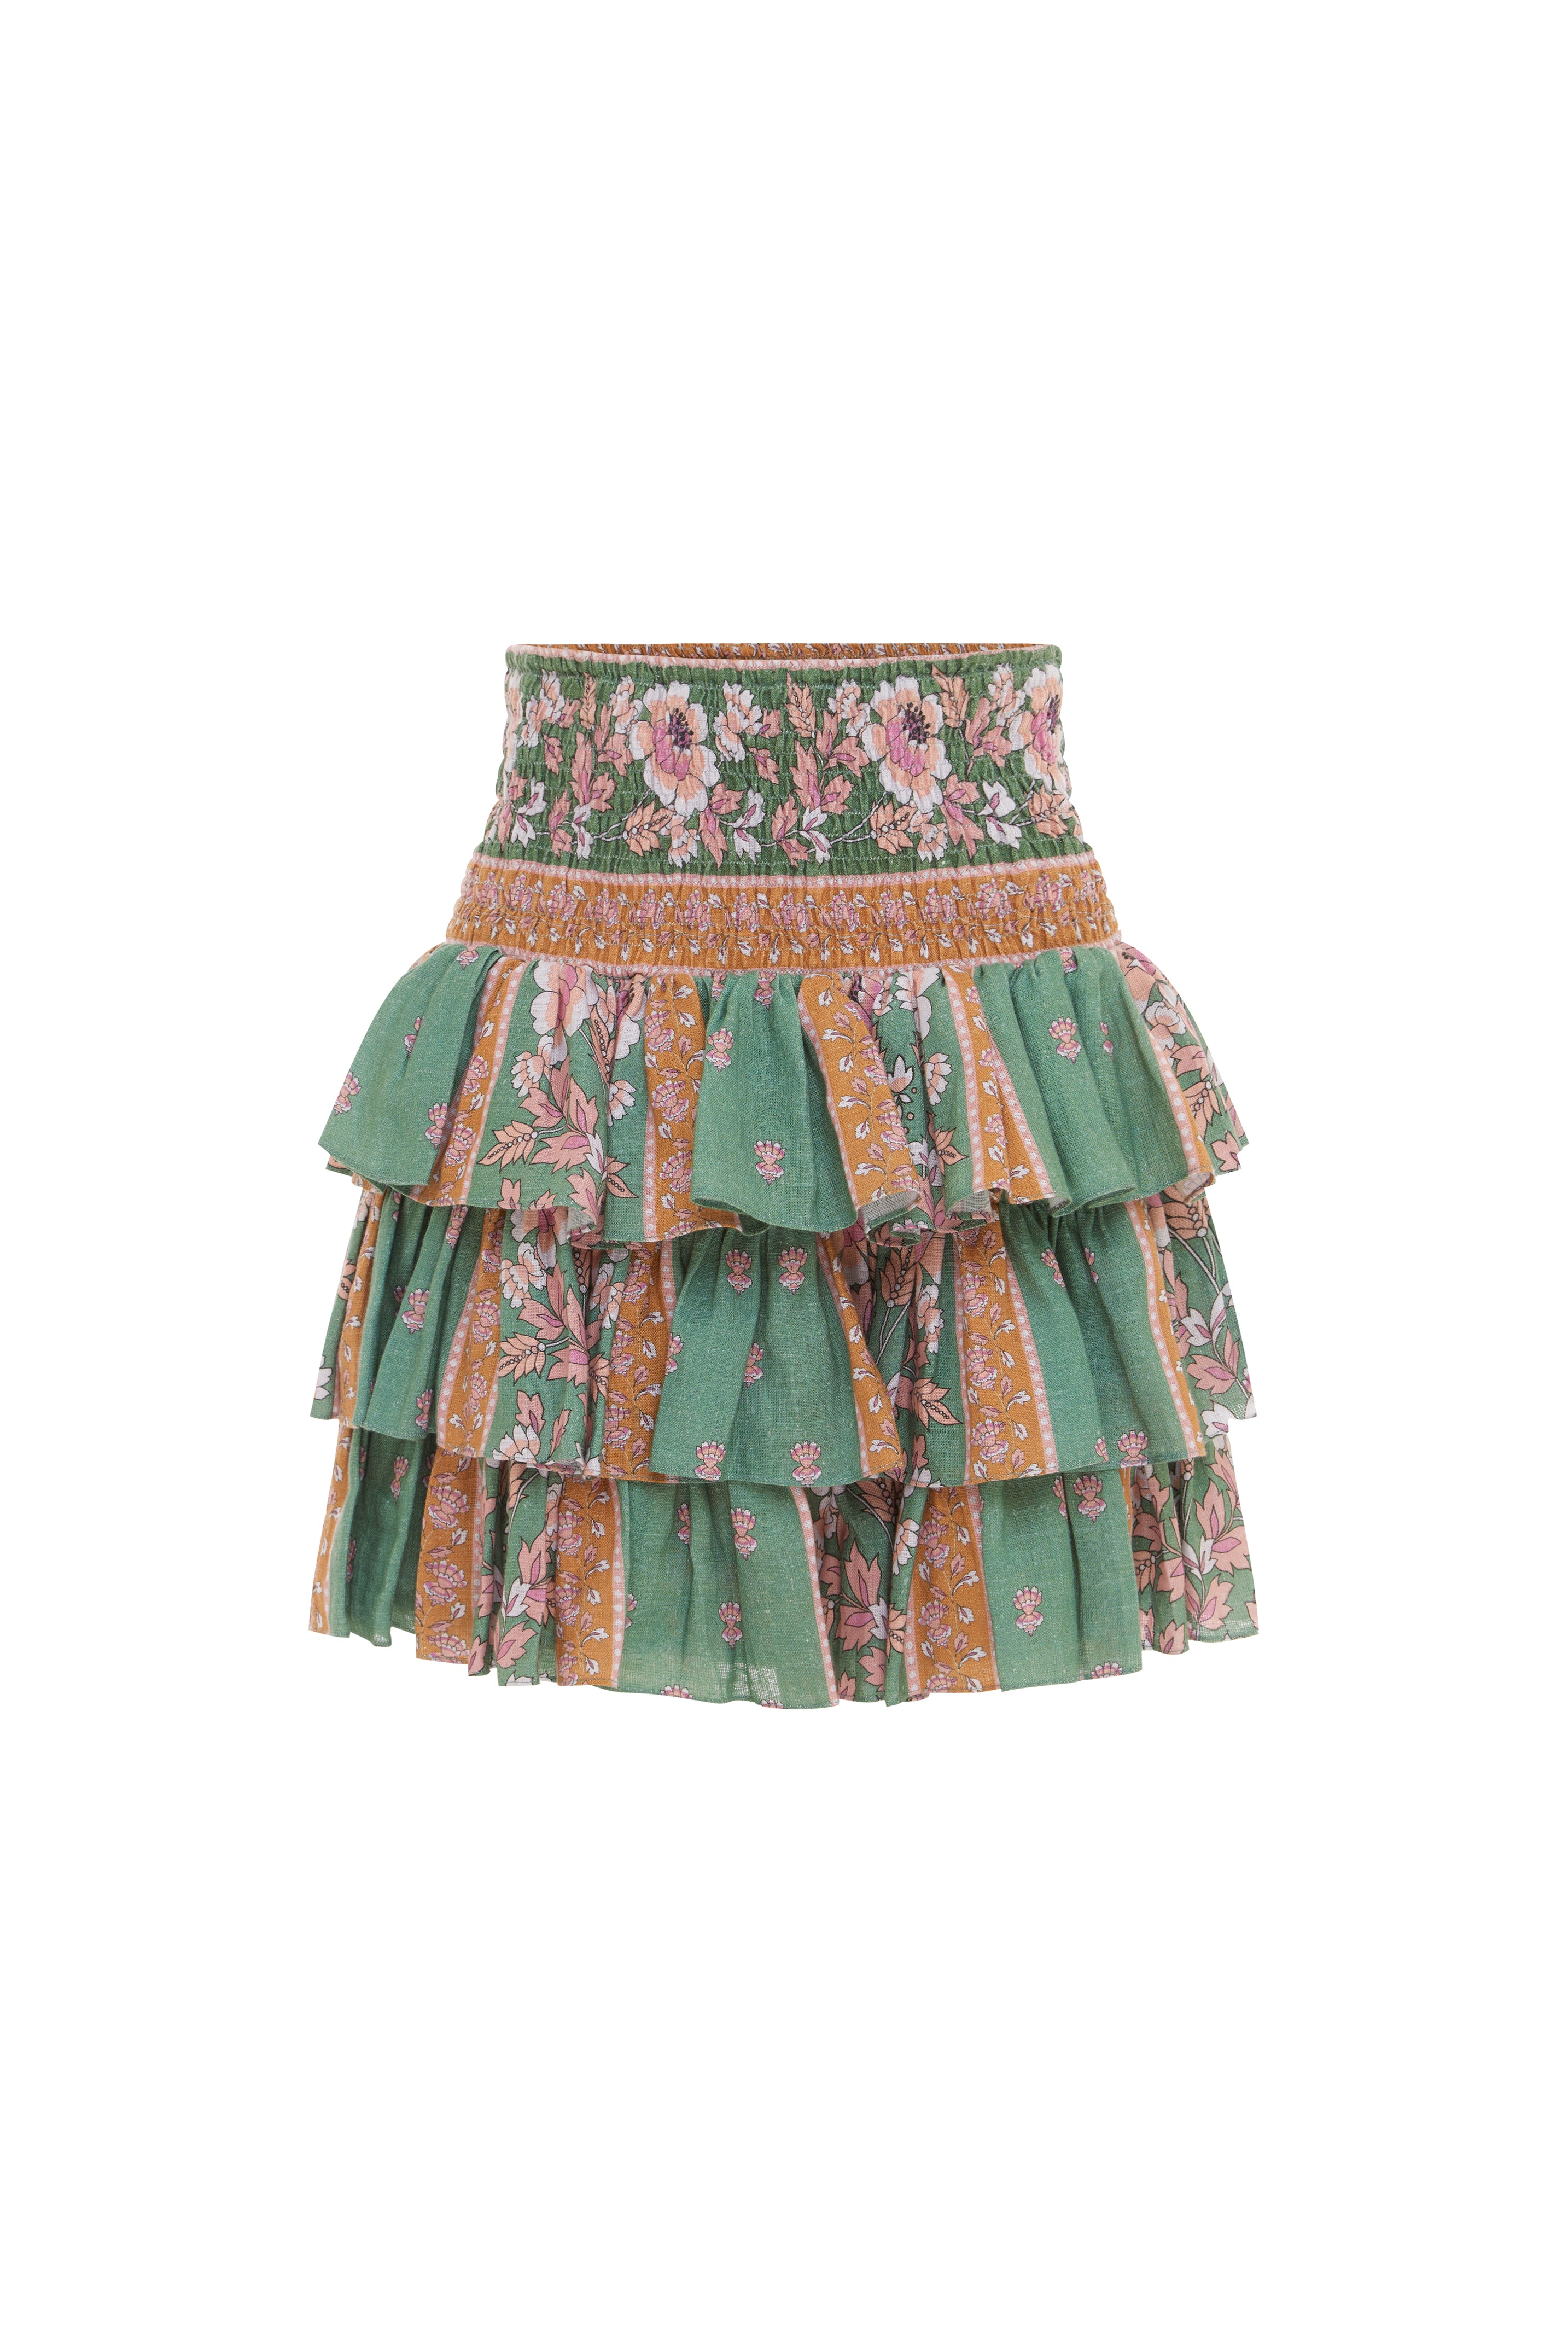 Calypso Rose Ruffle Skirt